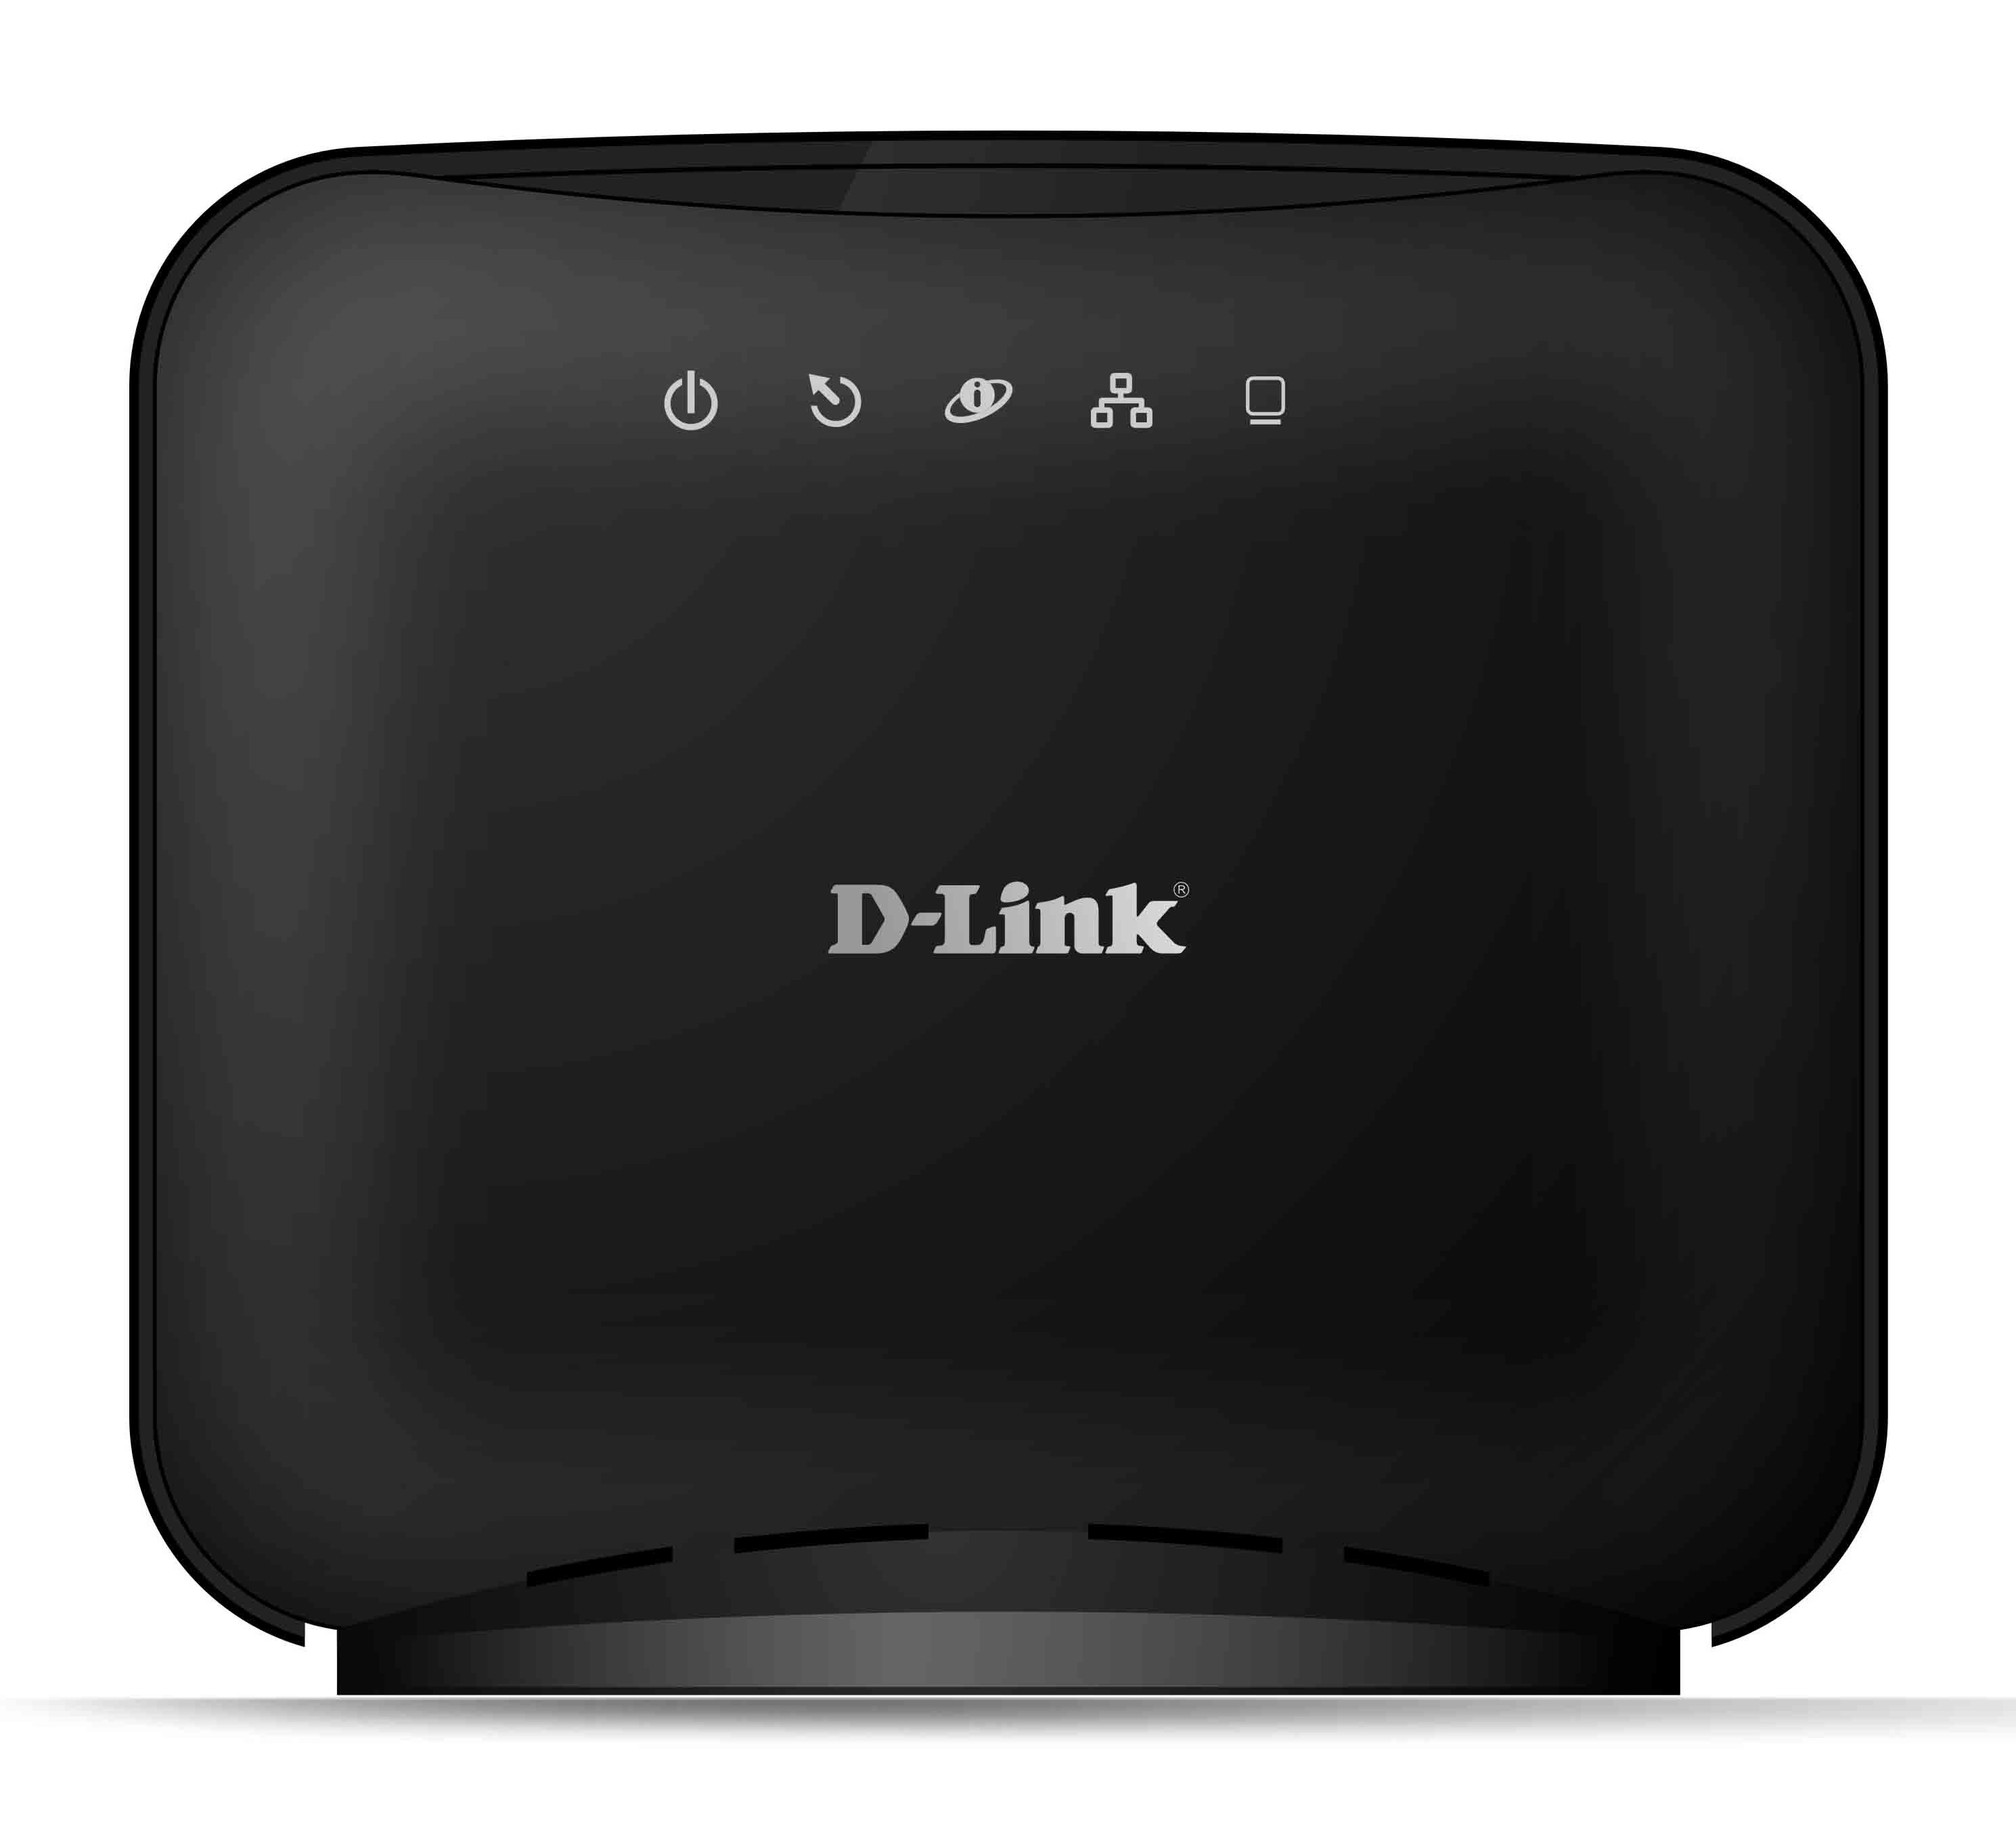  مودم اي دي اس ال -ADSL MODEM دي لينك-D-Link DSL-2520U-Z2